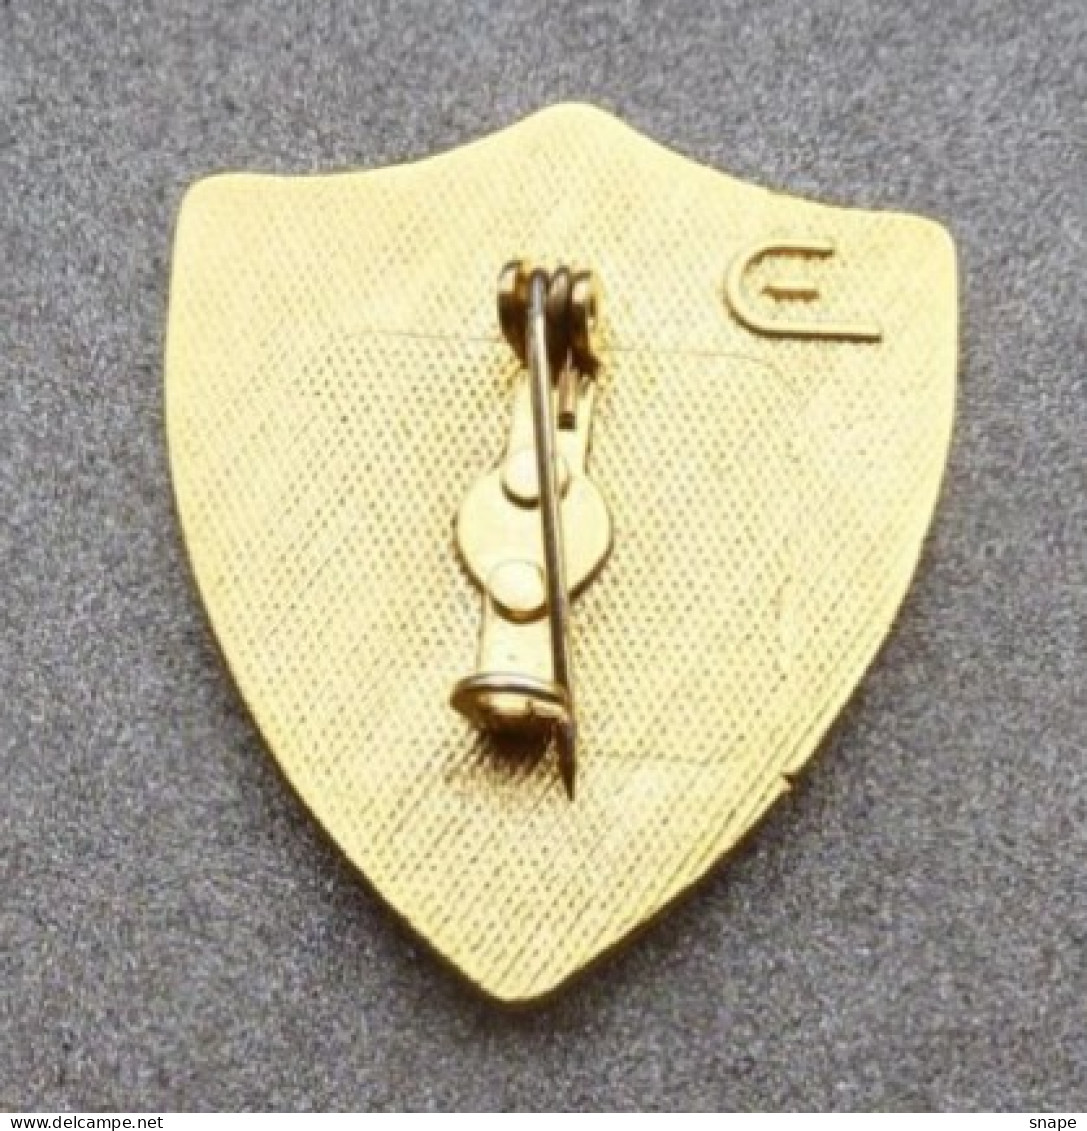 Distintivo Vetrificato - Carabinieri Centro Elicotteri - Usato Obsoleto - Italian Police Carabinieri Insignia (283) - Polizia